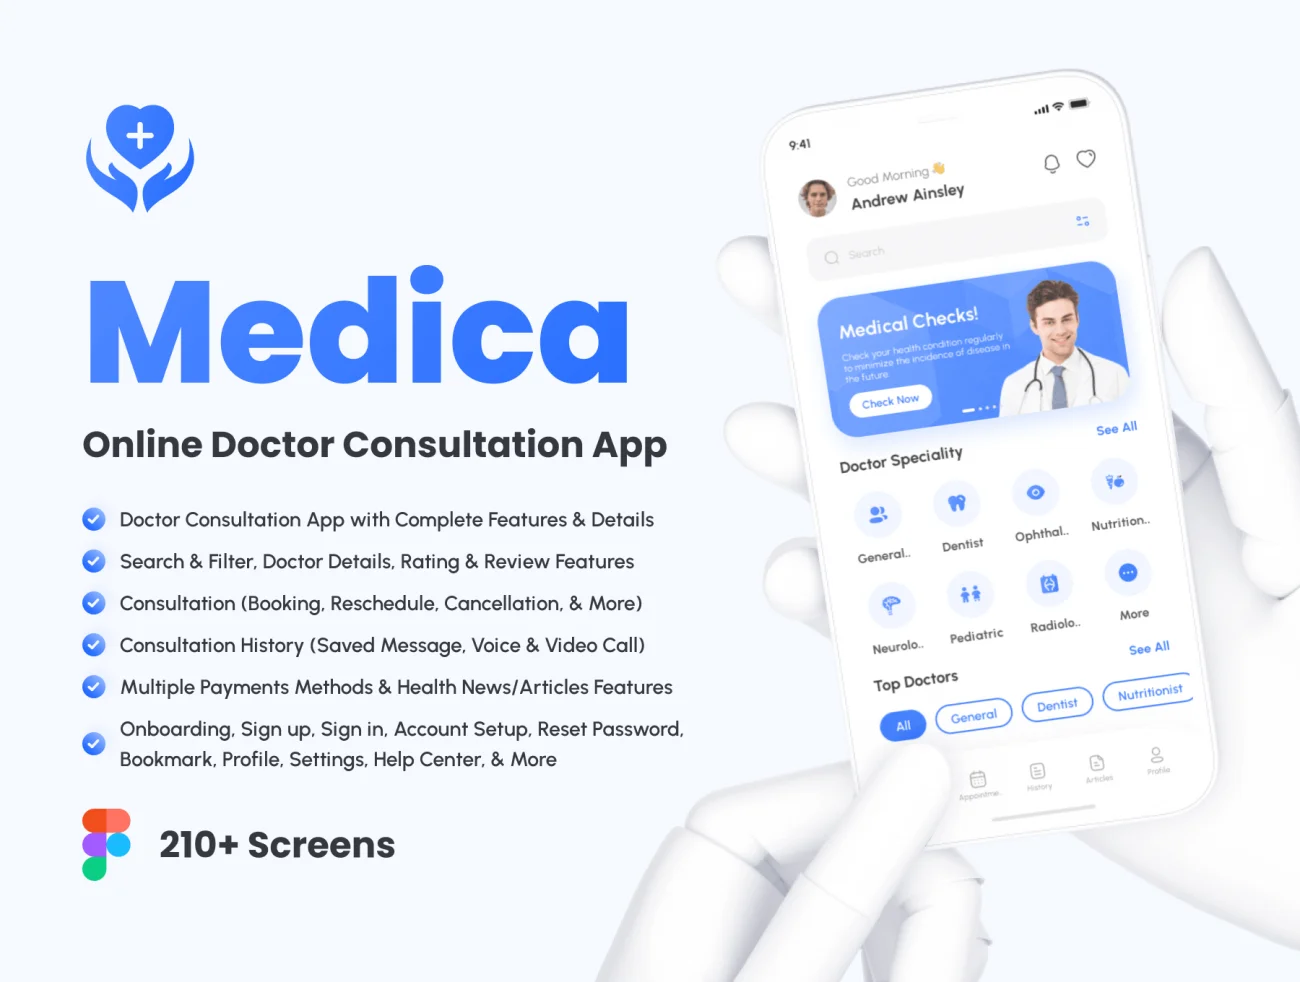 210屏在线医生咨询医疗应用程序 UI 套件 Medica – Online Doctor Consultation App UI Kit figma插图1